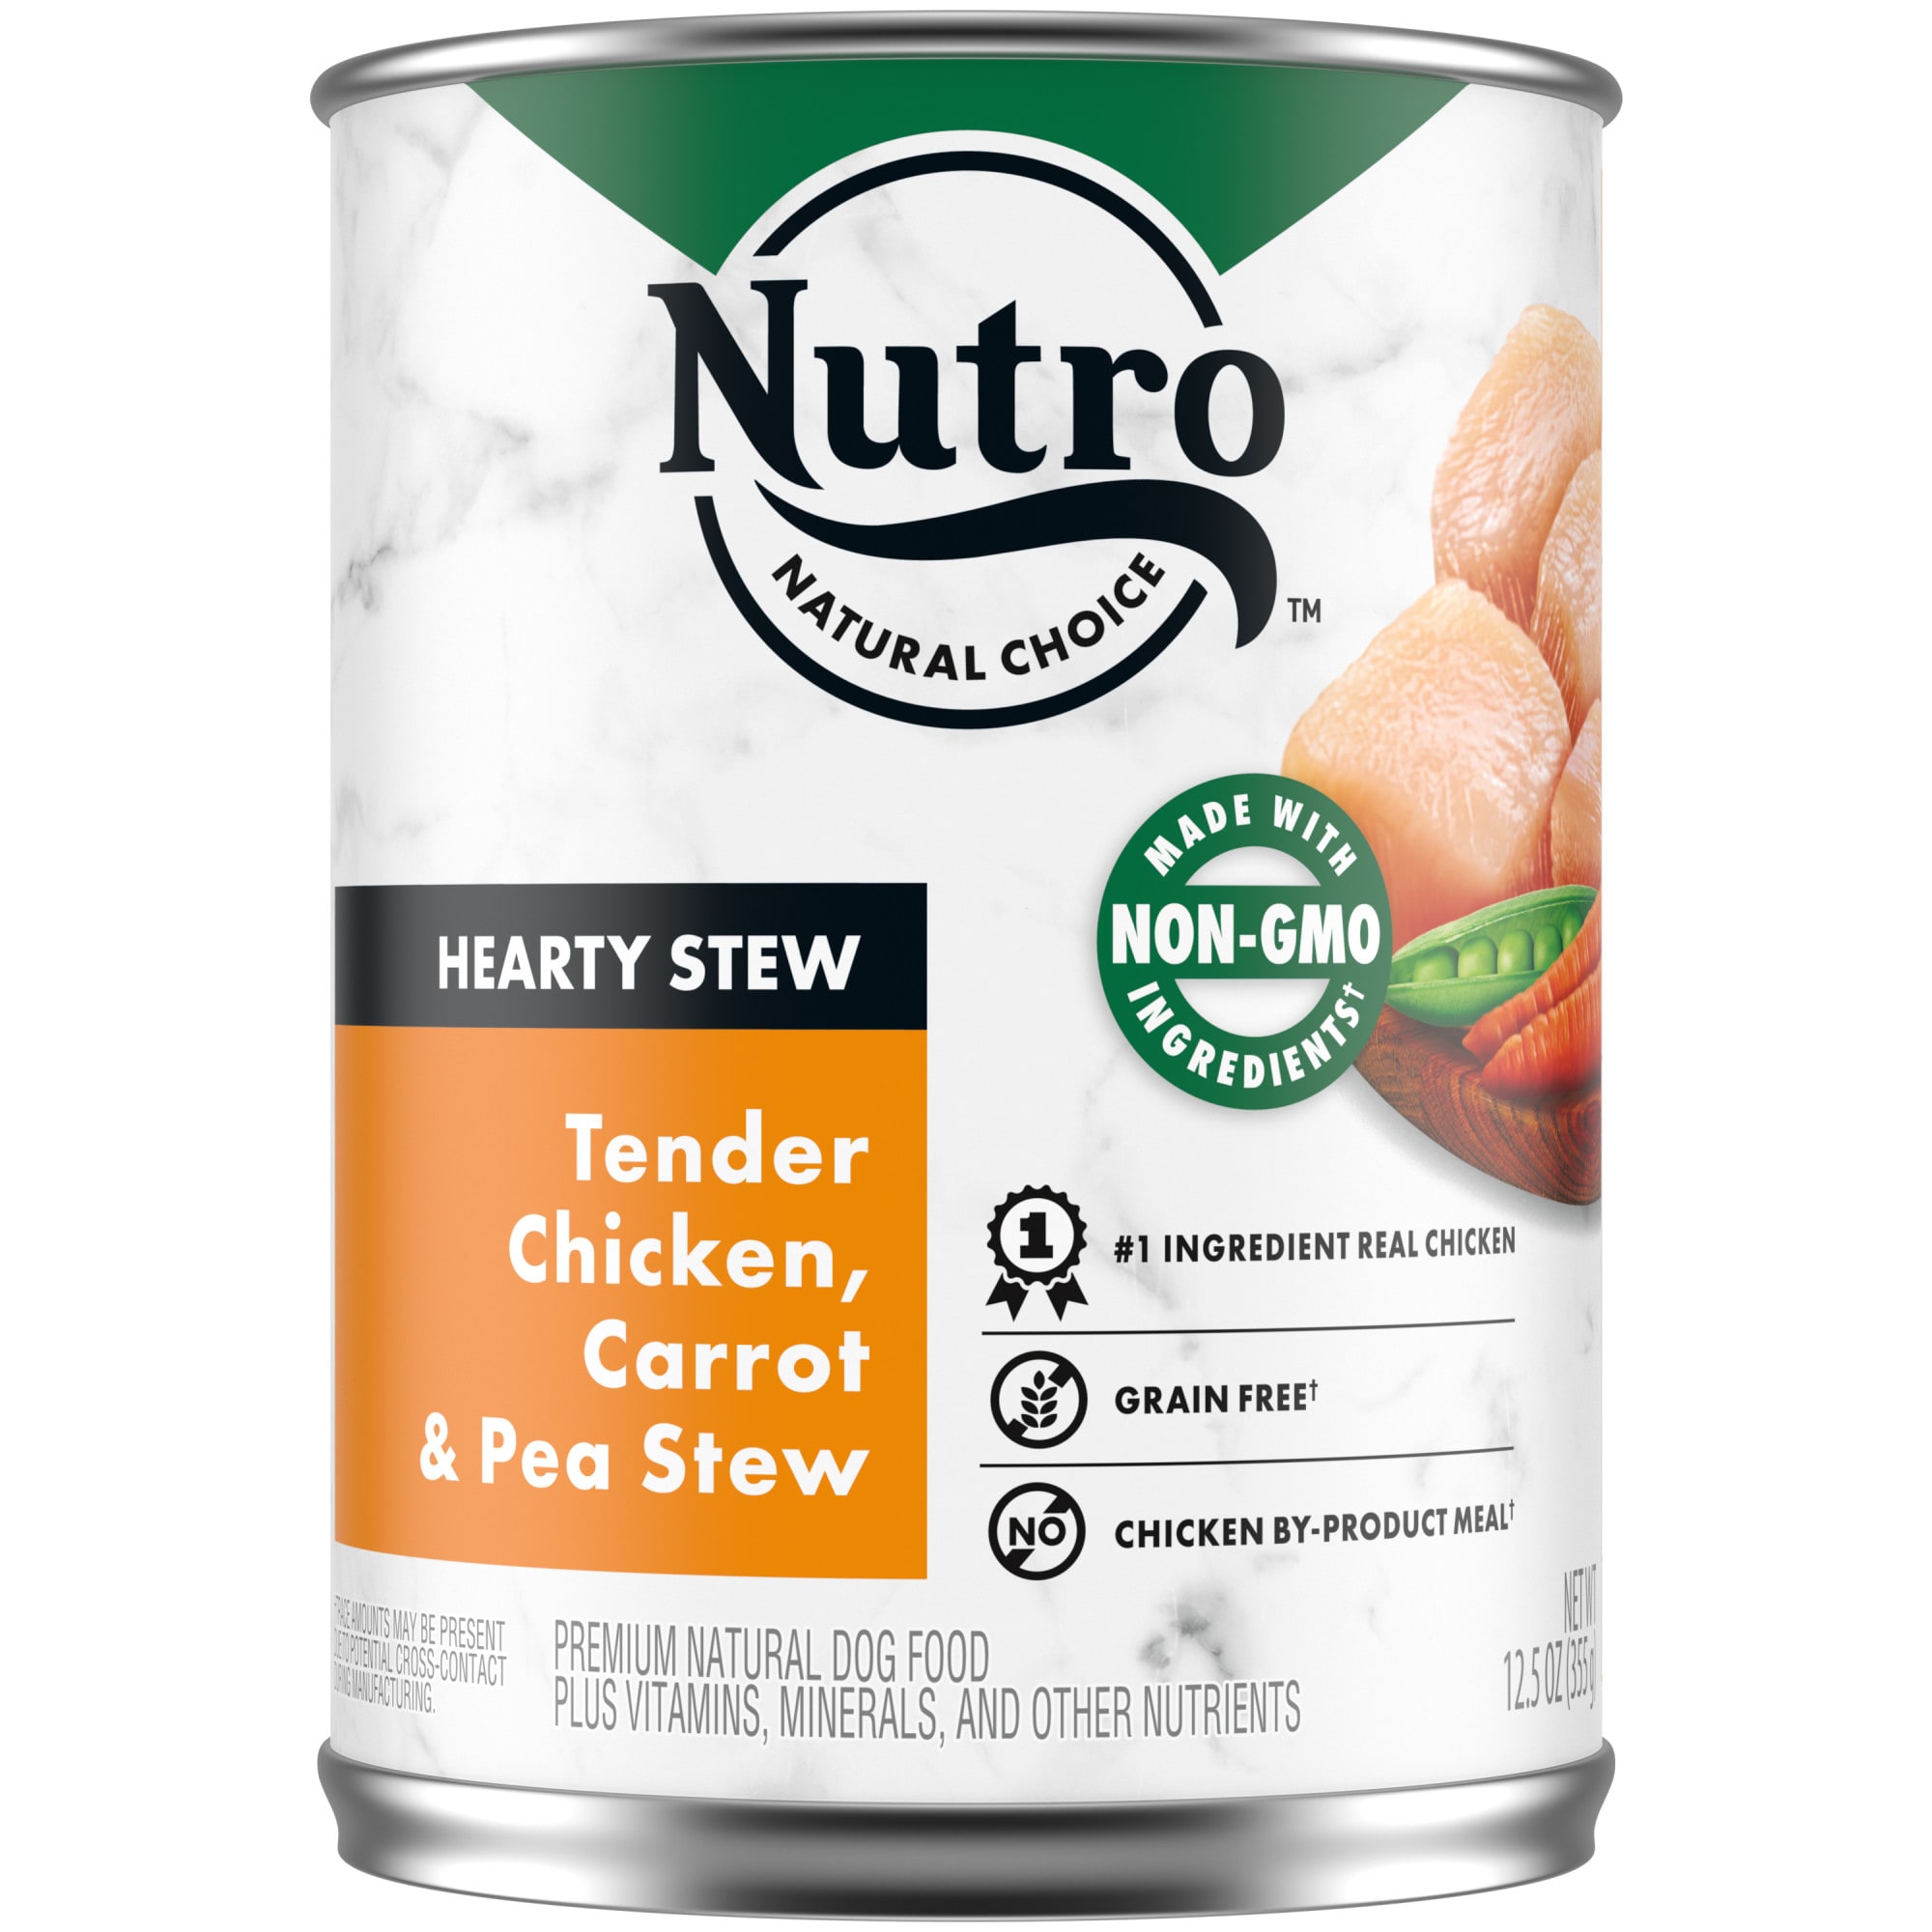 nutro dog wet food